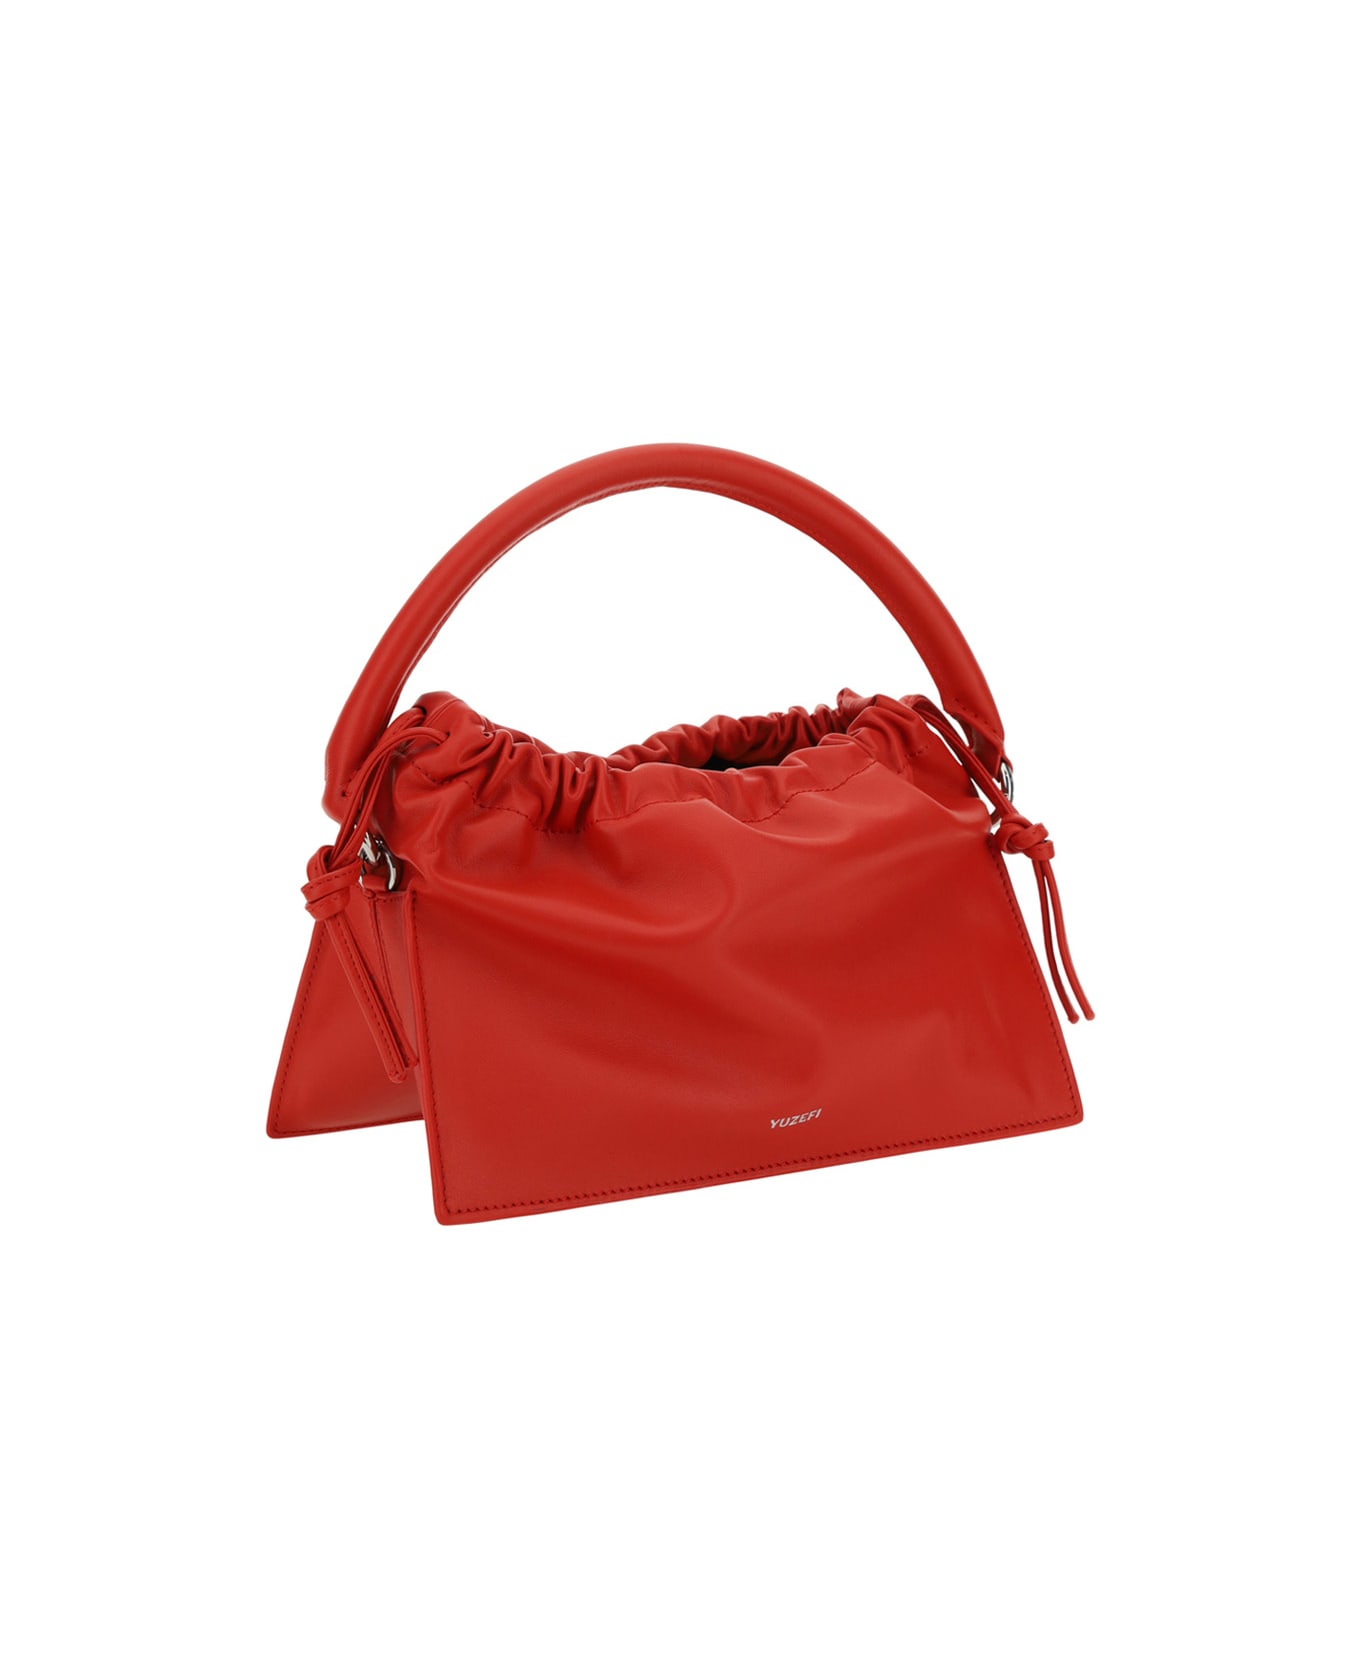 YUZEFI Bom Mini Handbag - Red